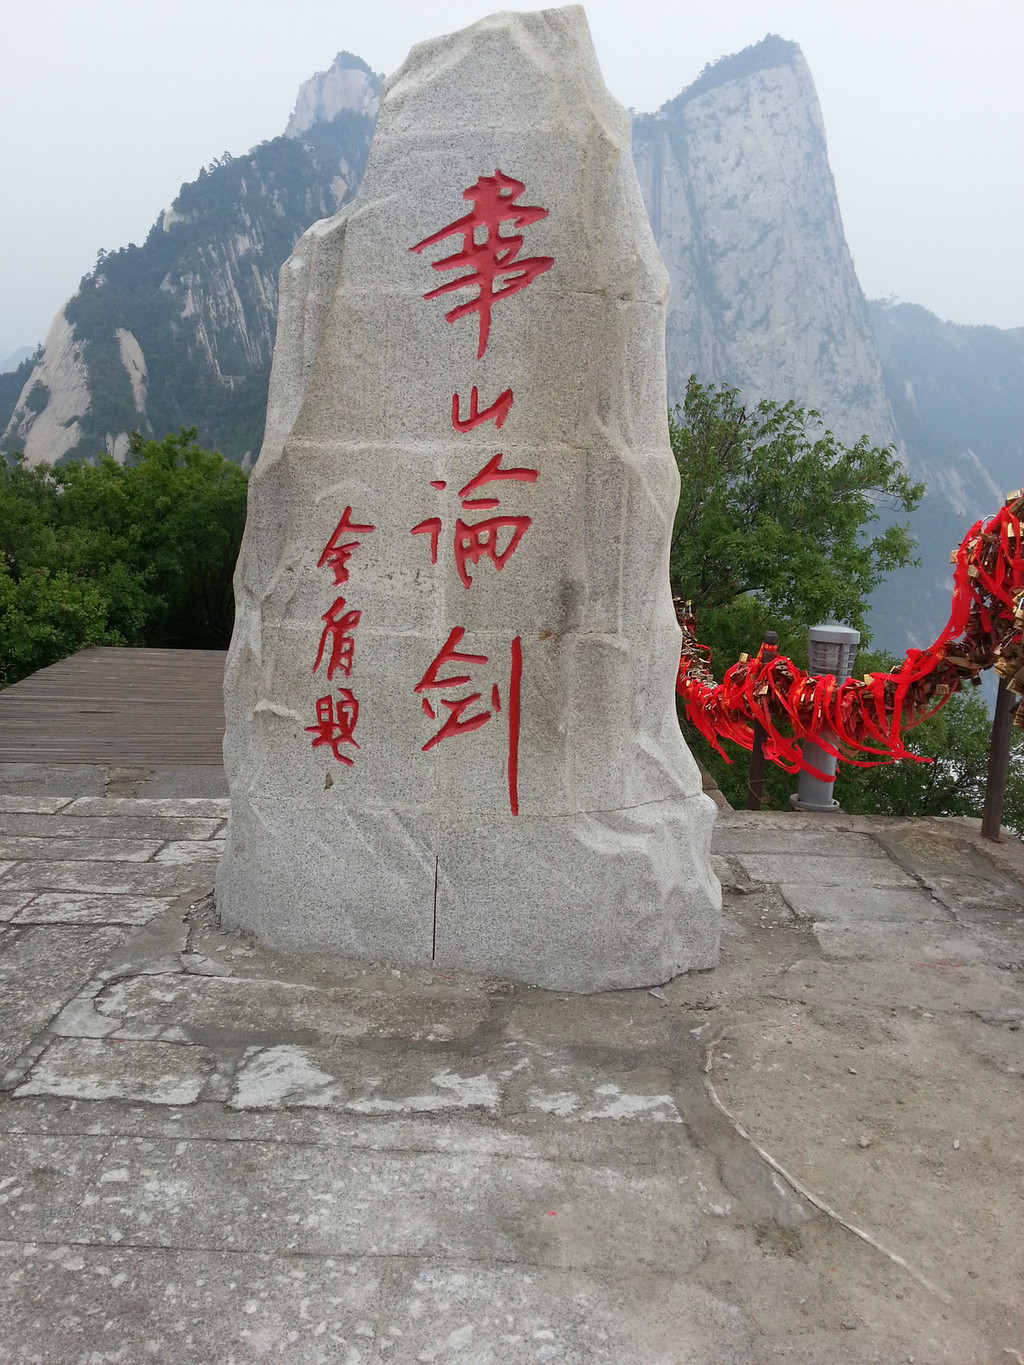 华山有5个峰 每个峰上都有这个石碑